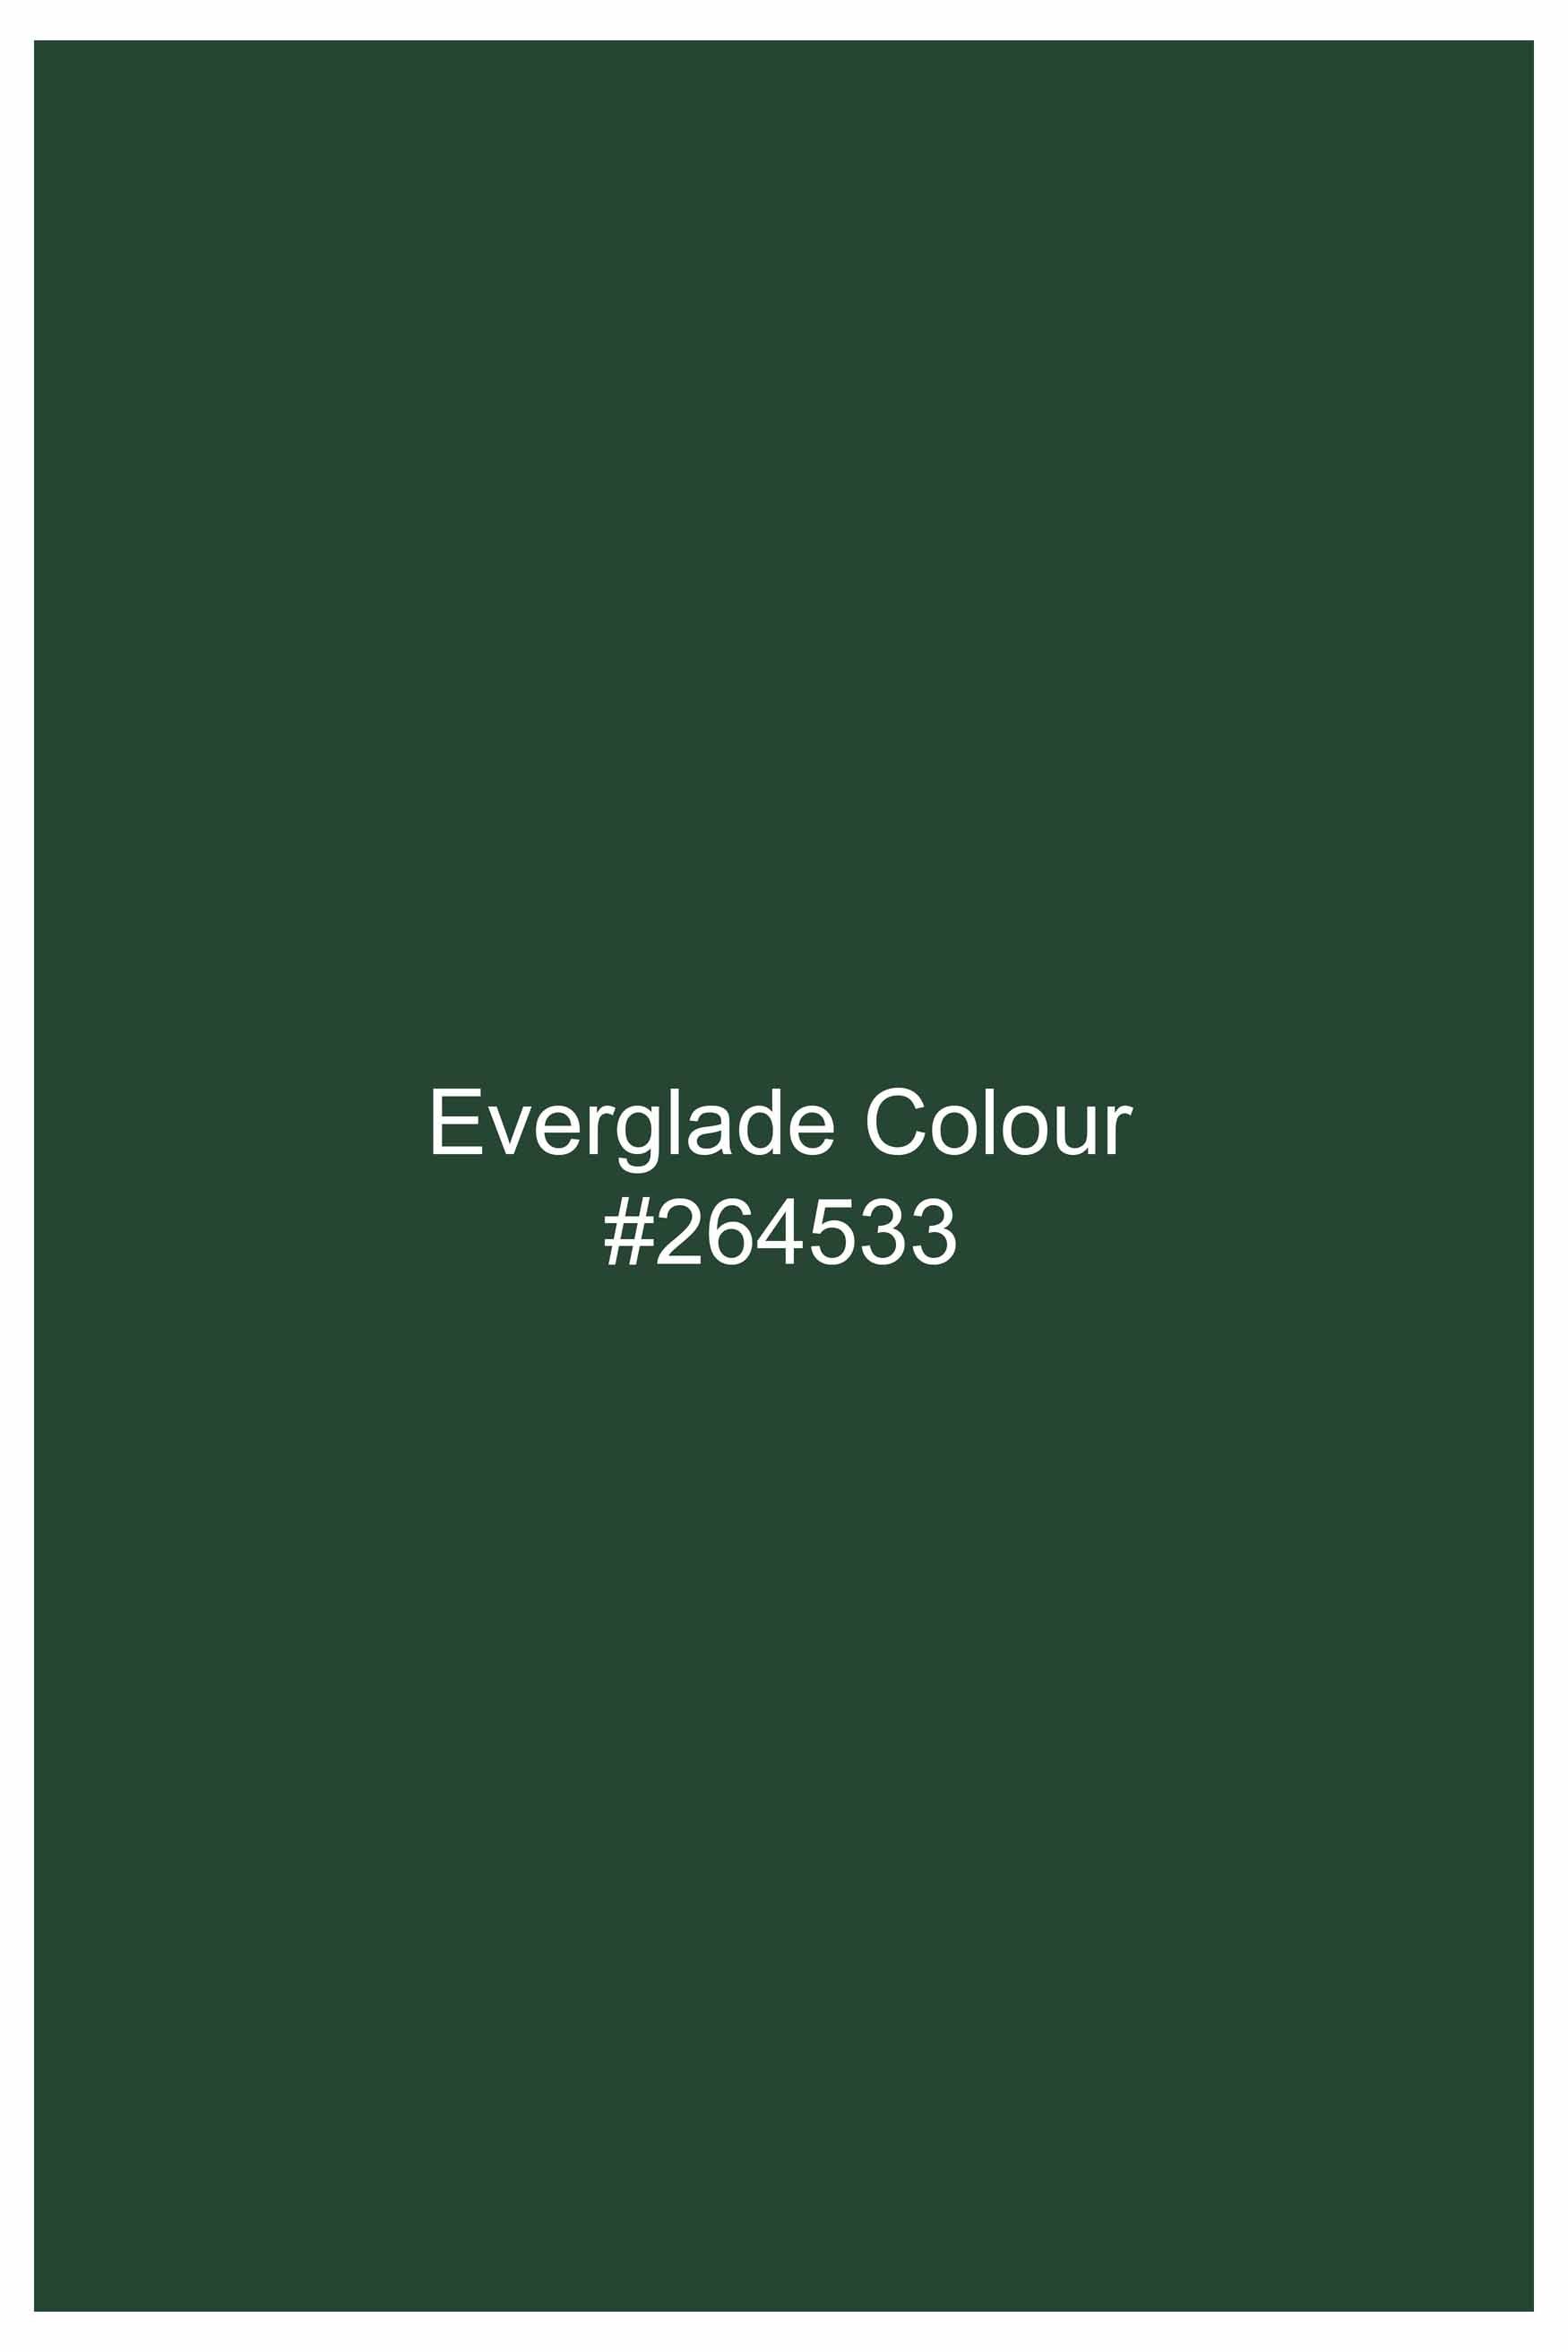 Everglade Green Subtle Sheen Super Soft Premium Cotton Shirt